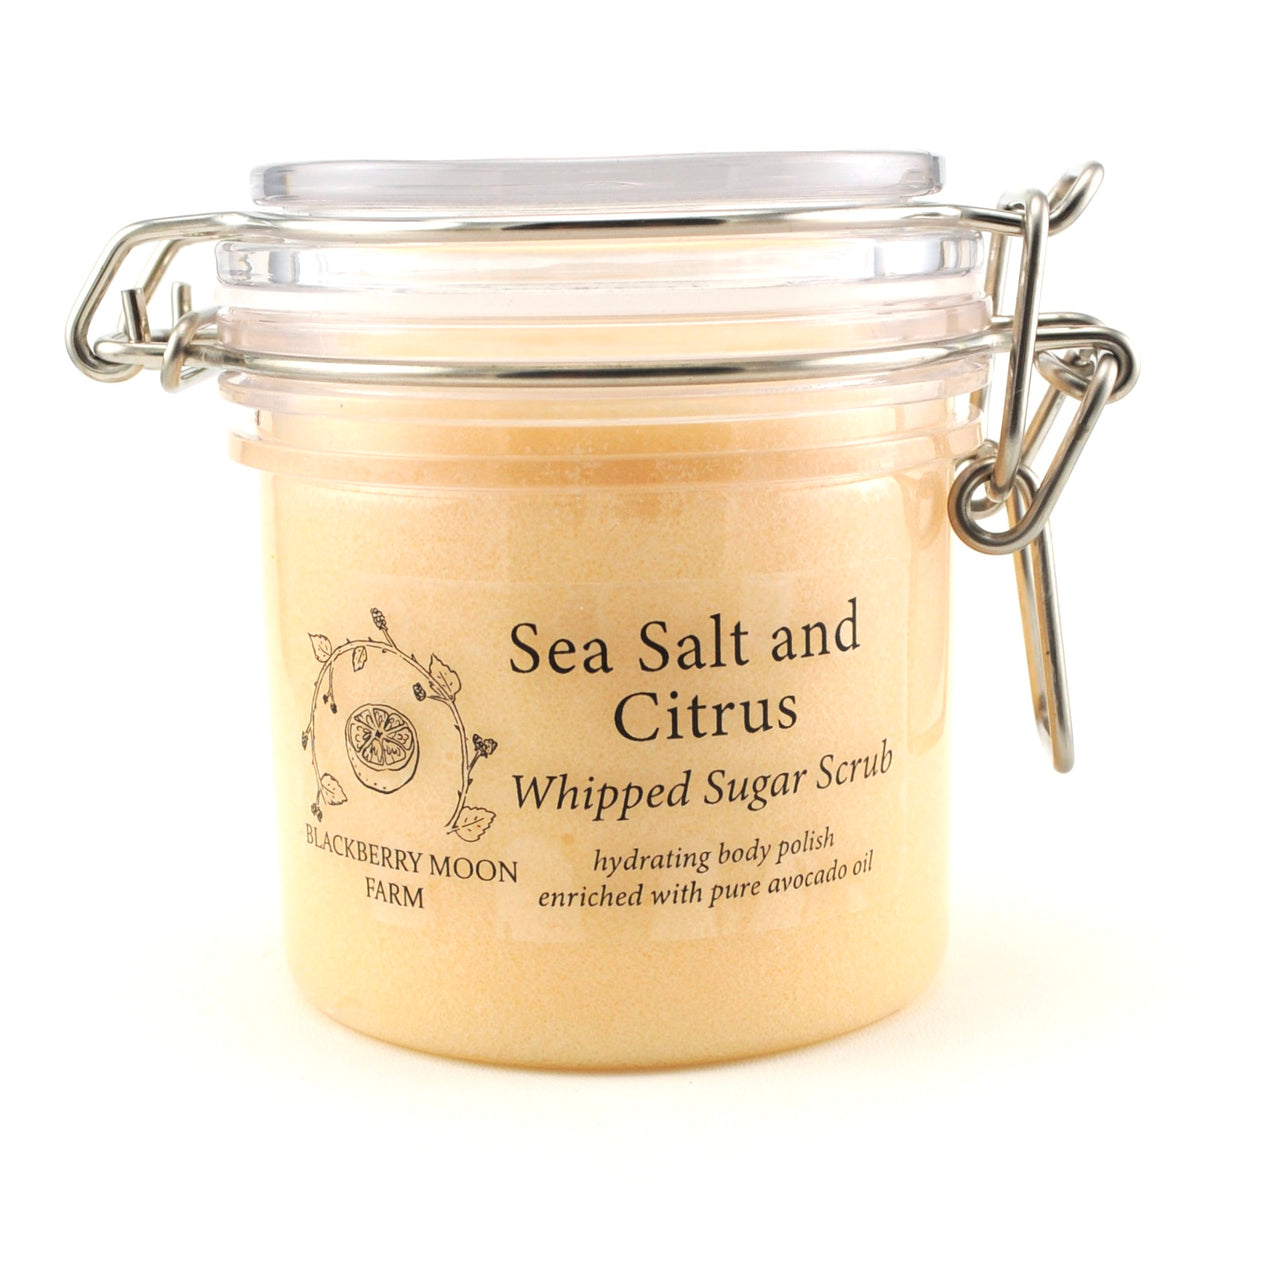 Sea Salt & Citrus Whipped Sugar Scrub